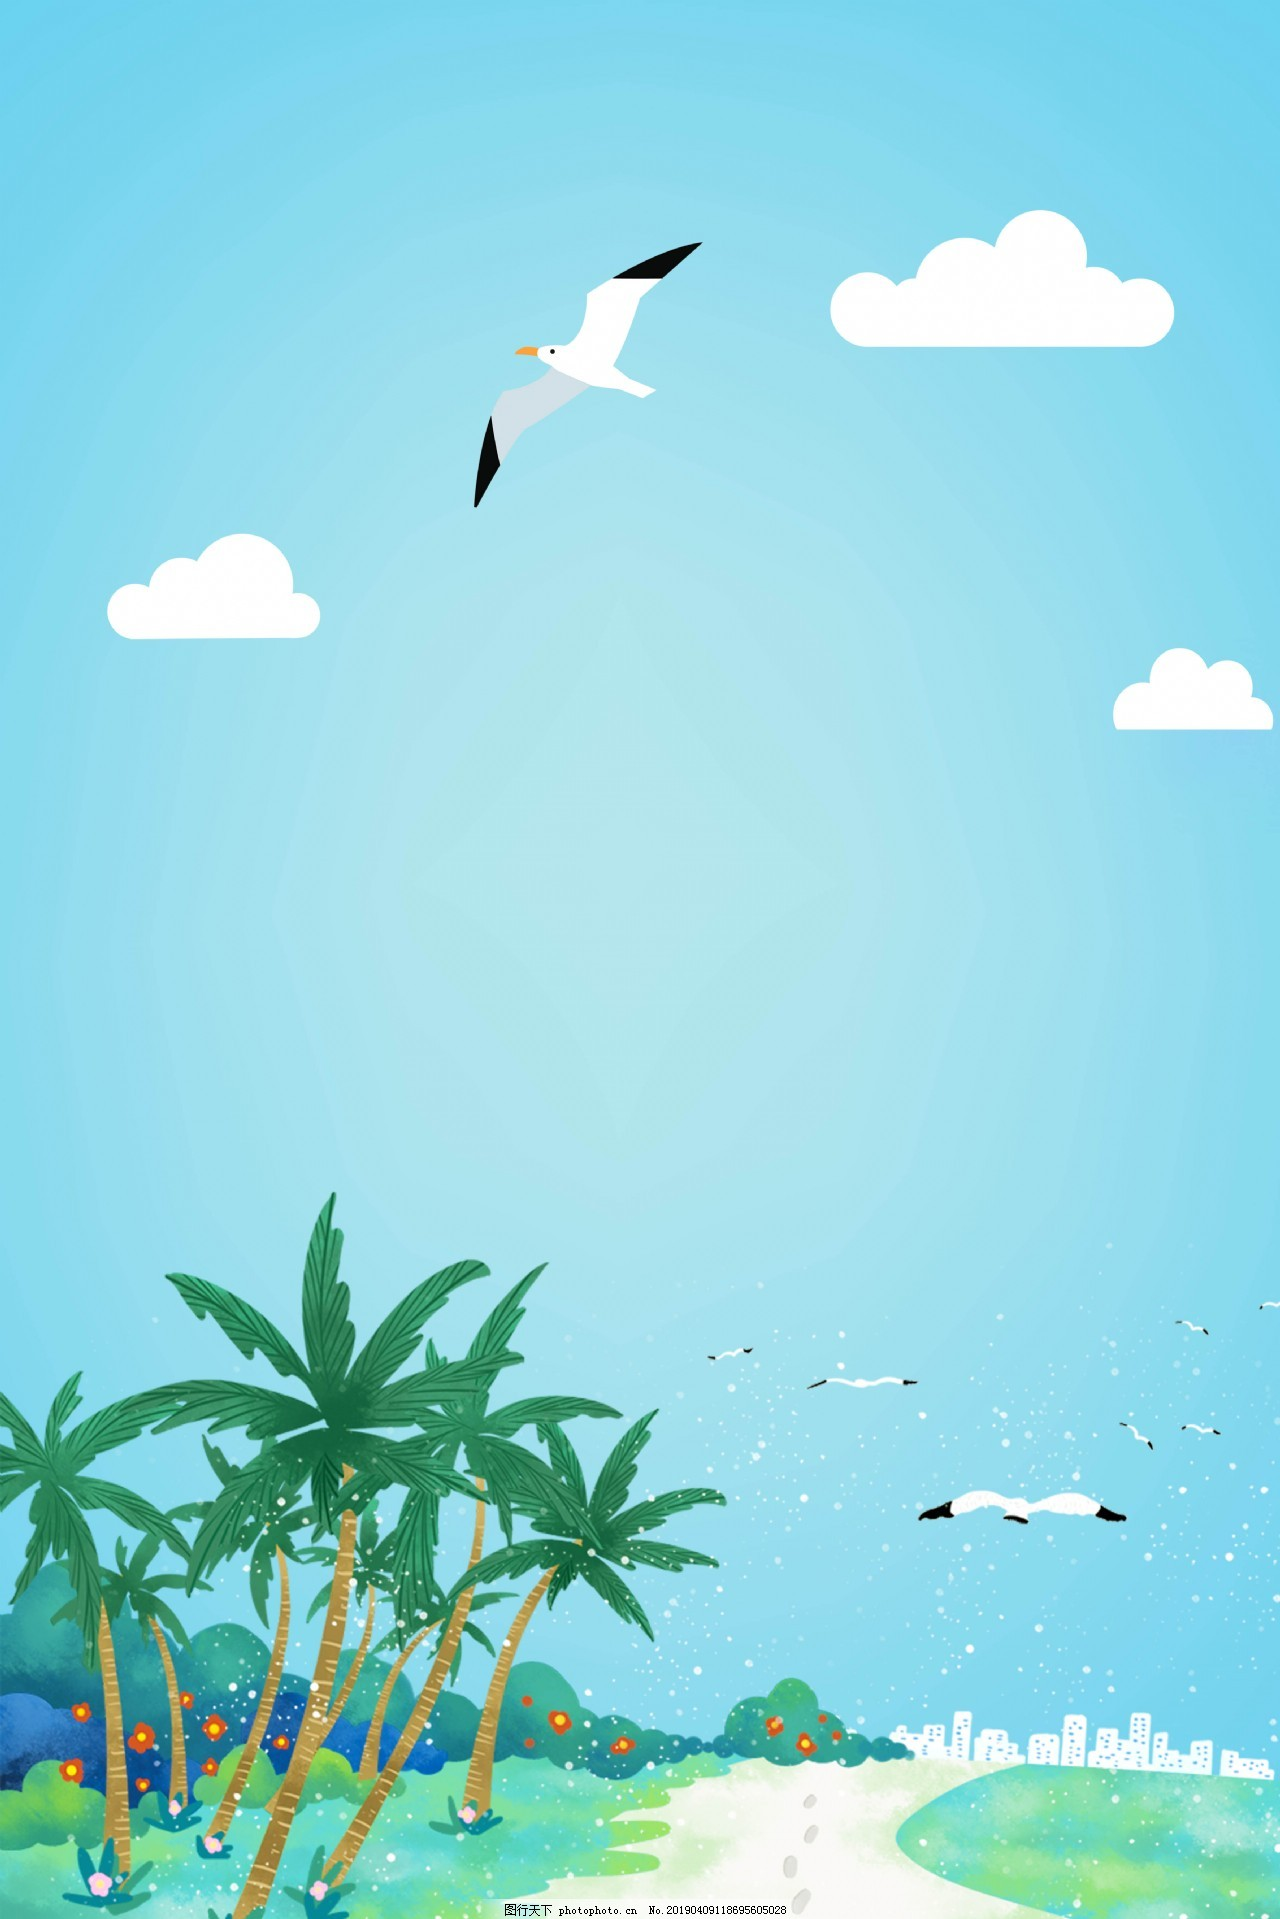 ‘~椰树海鸥度假背景海报图片_H5背景_底纹边框-  ~’ 的图片